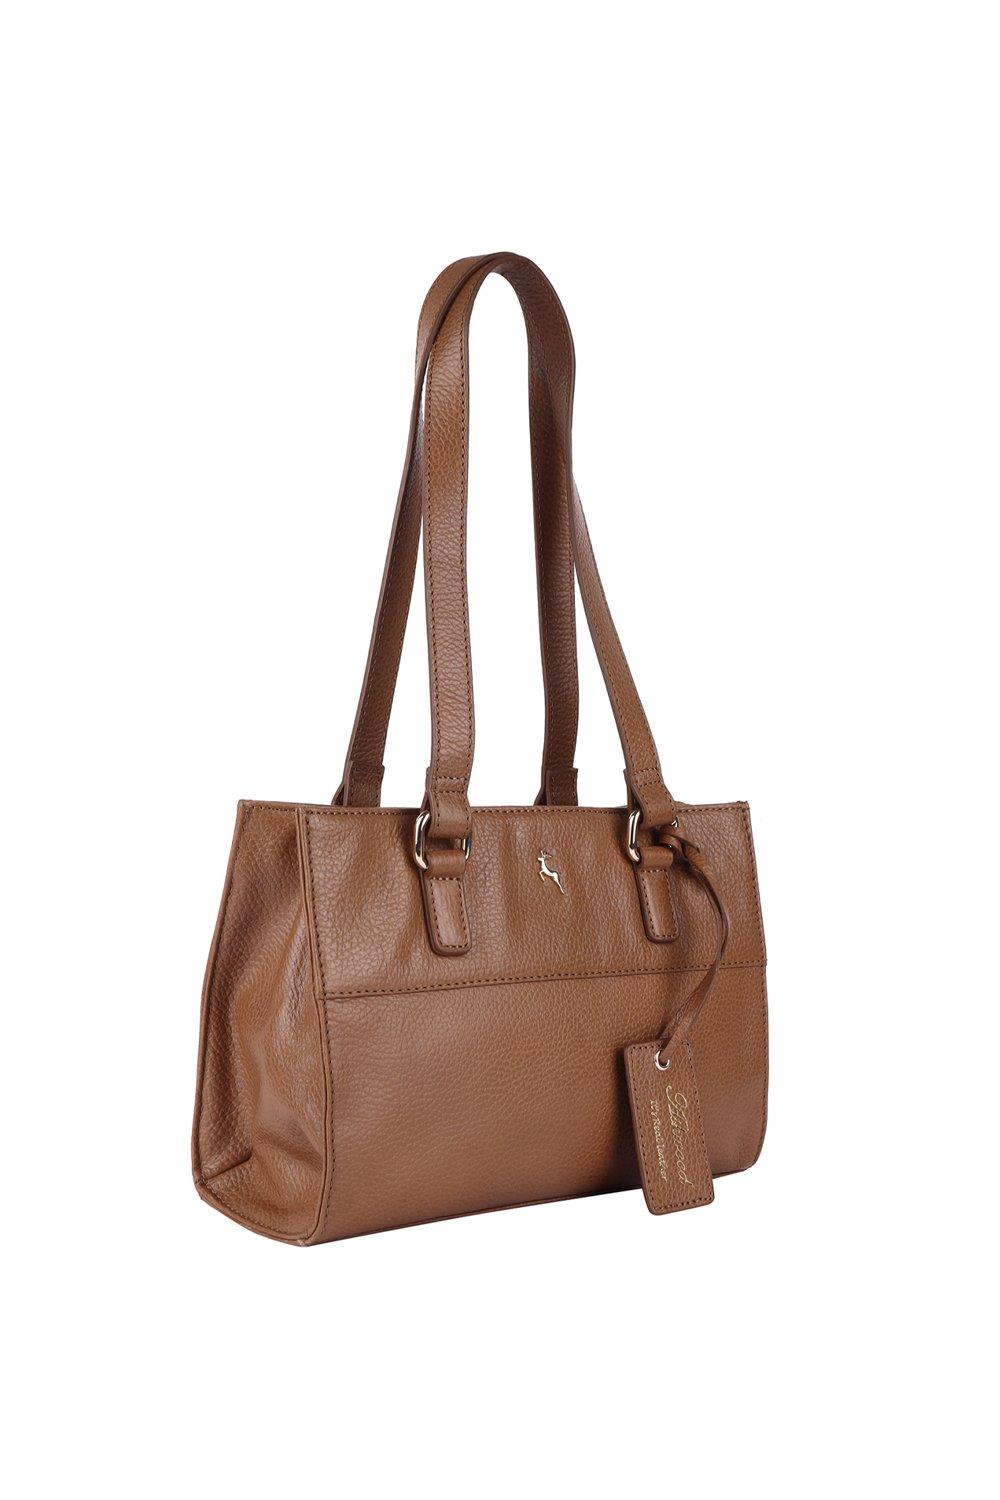 Mimisku handbag set with handbag, sling bag and wallet | Handbag, Sling bag,  Bags